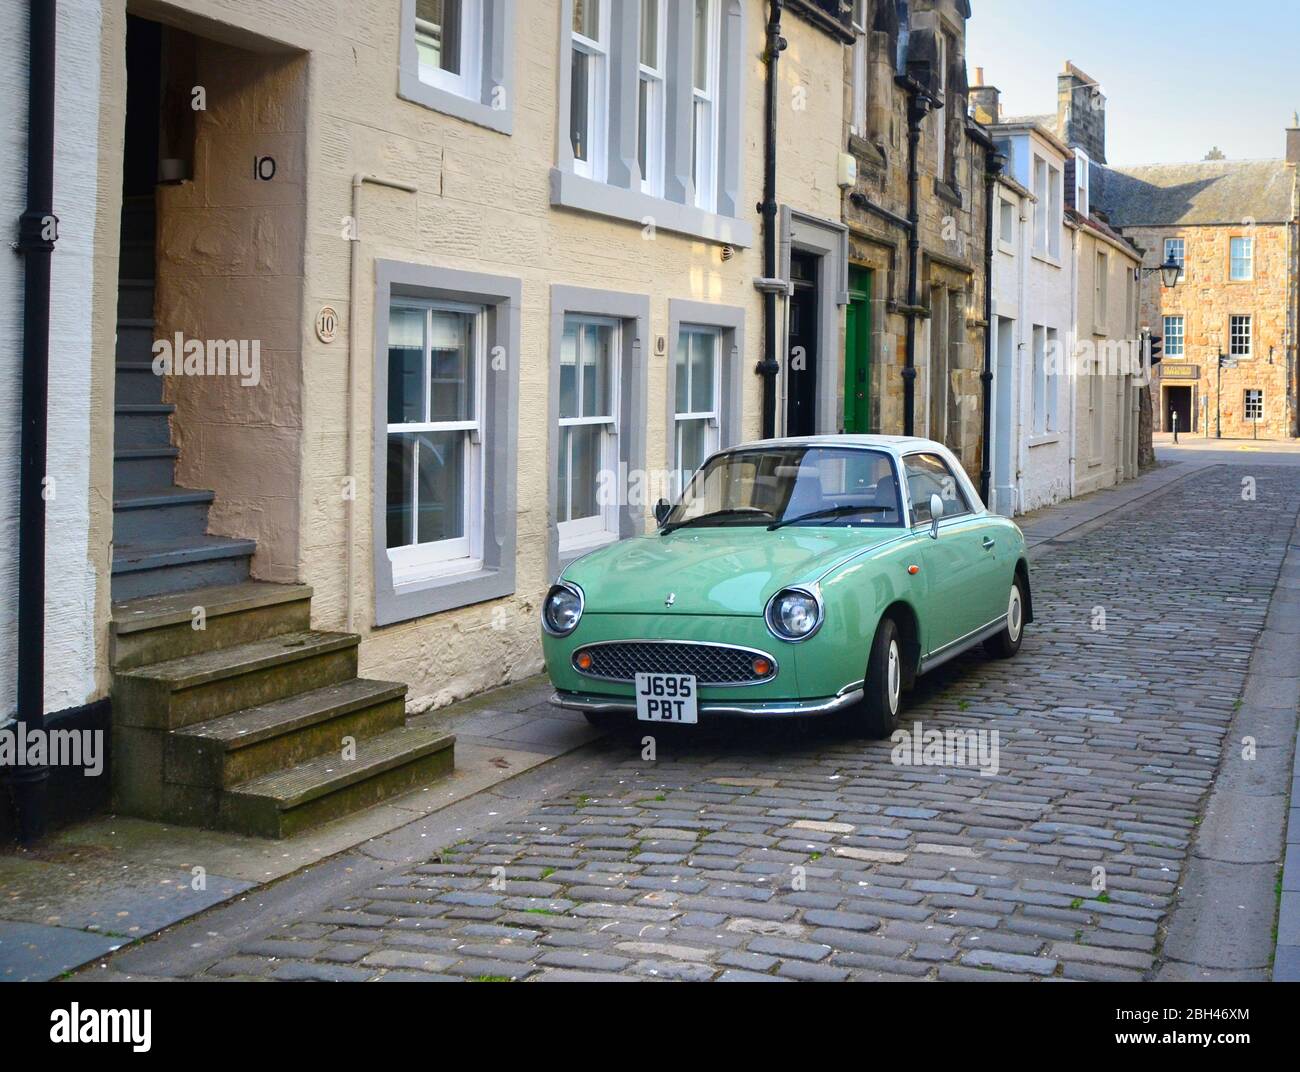 El coche de estilo retro de los años 60, el Nissan Figaro aparcado en una calle adoquinada en el casco antiguo de St andrews, Fifé, Escocia Foto de stock